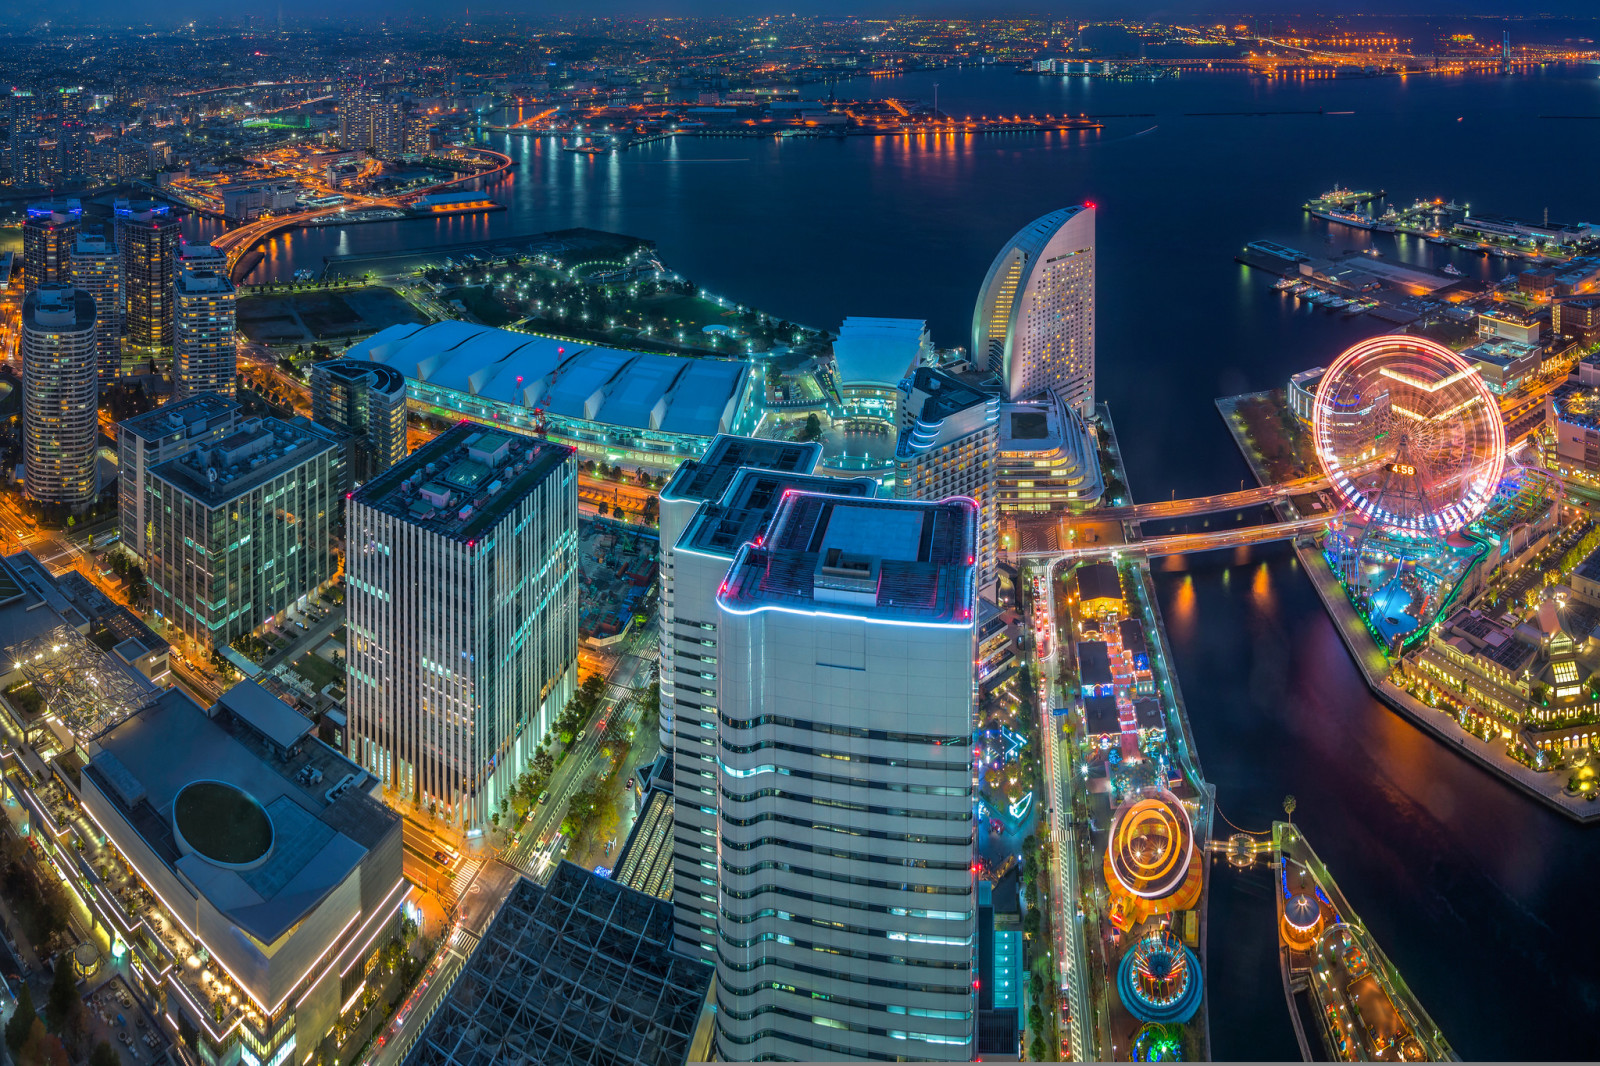 Vịnh, Thành phố đêm, tòa nhà chọc trời, Nhật Bản, bức tranh toàn cảnh, xây dựng, Yokohama, Vịnh Tokyo